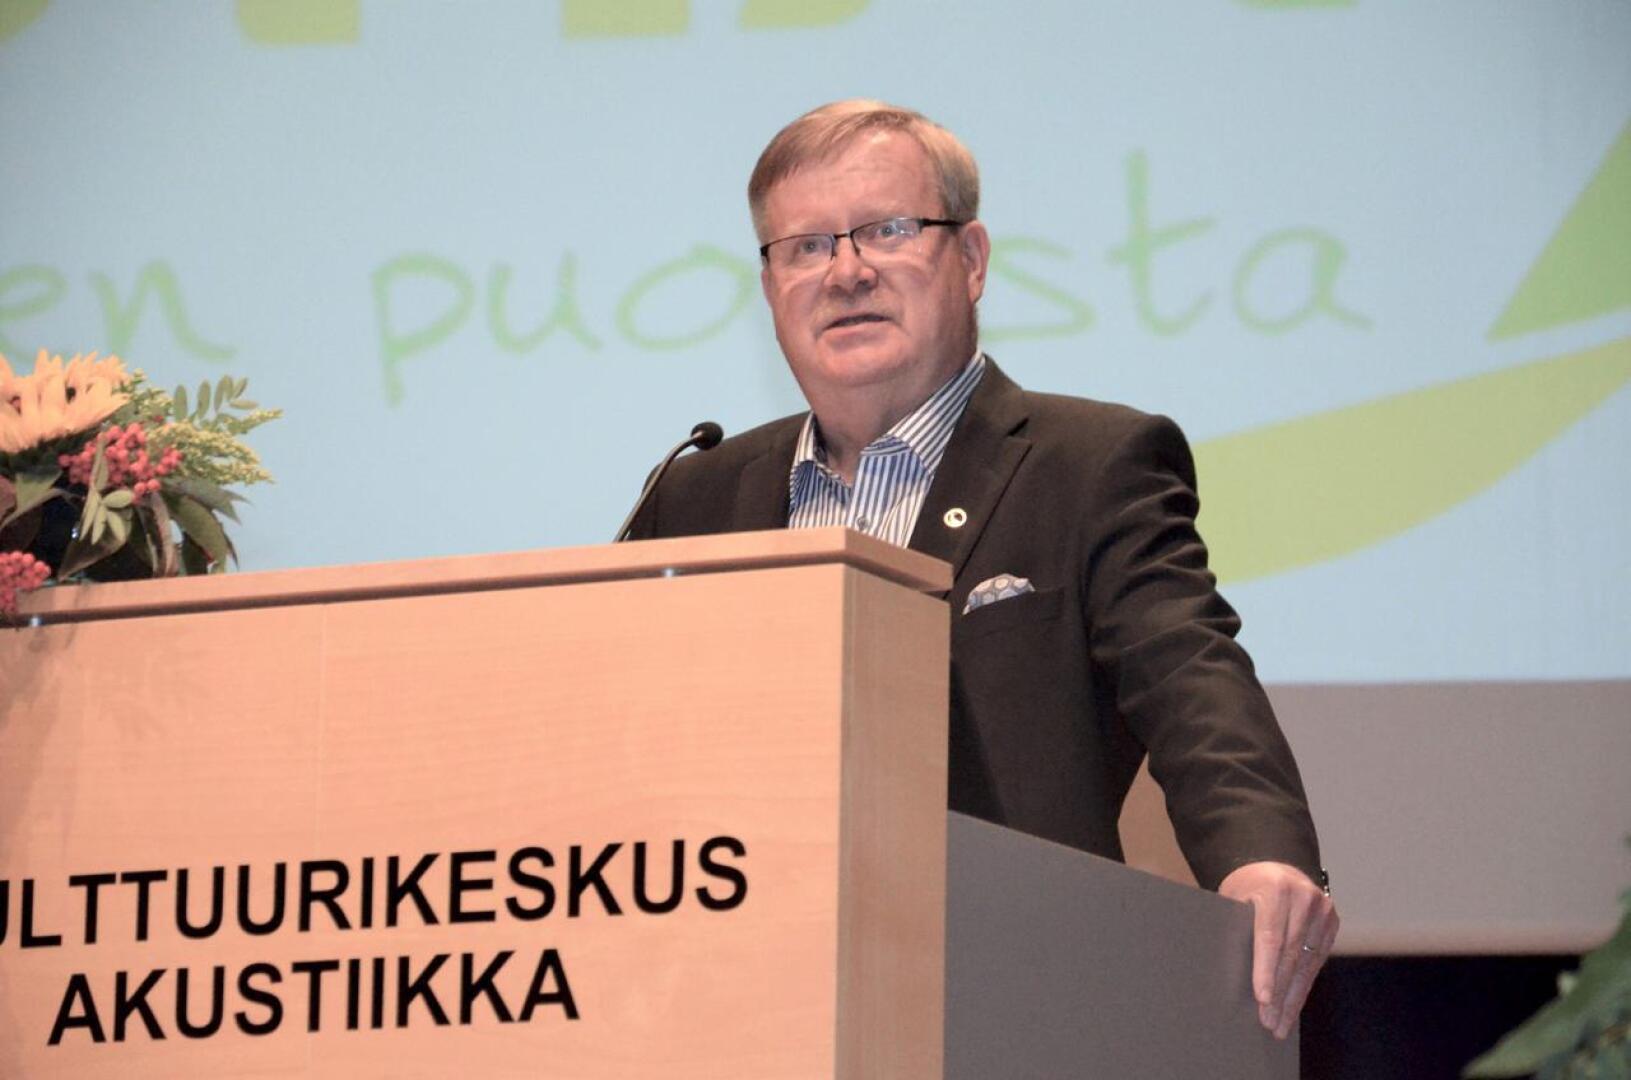 Vestian hallituksen puheenjohtajana jatkaa Paavo Hankonen.